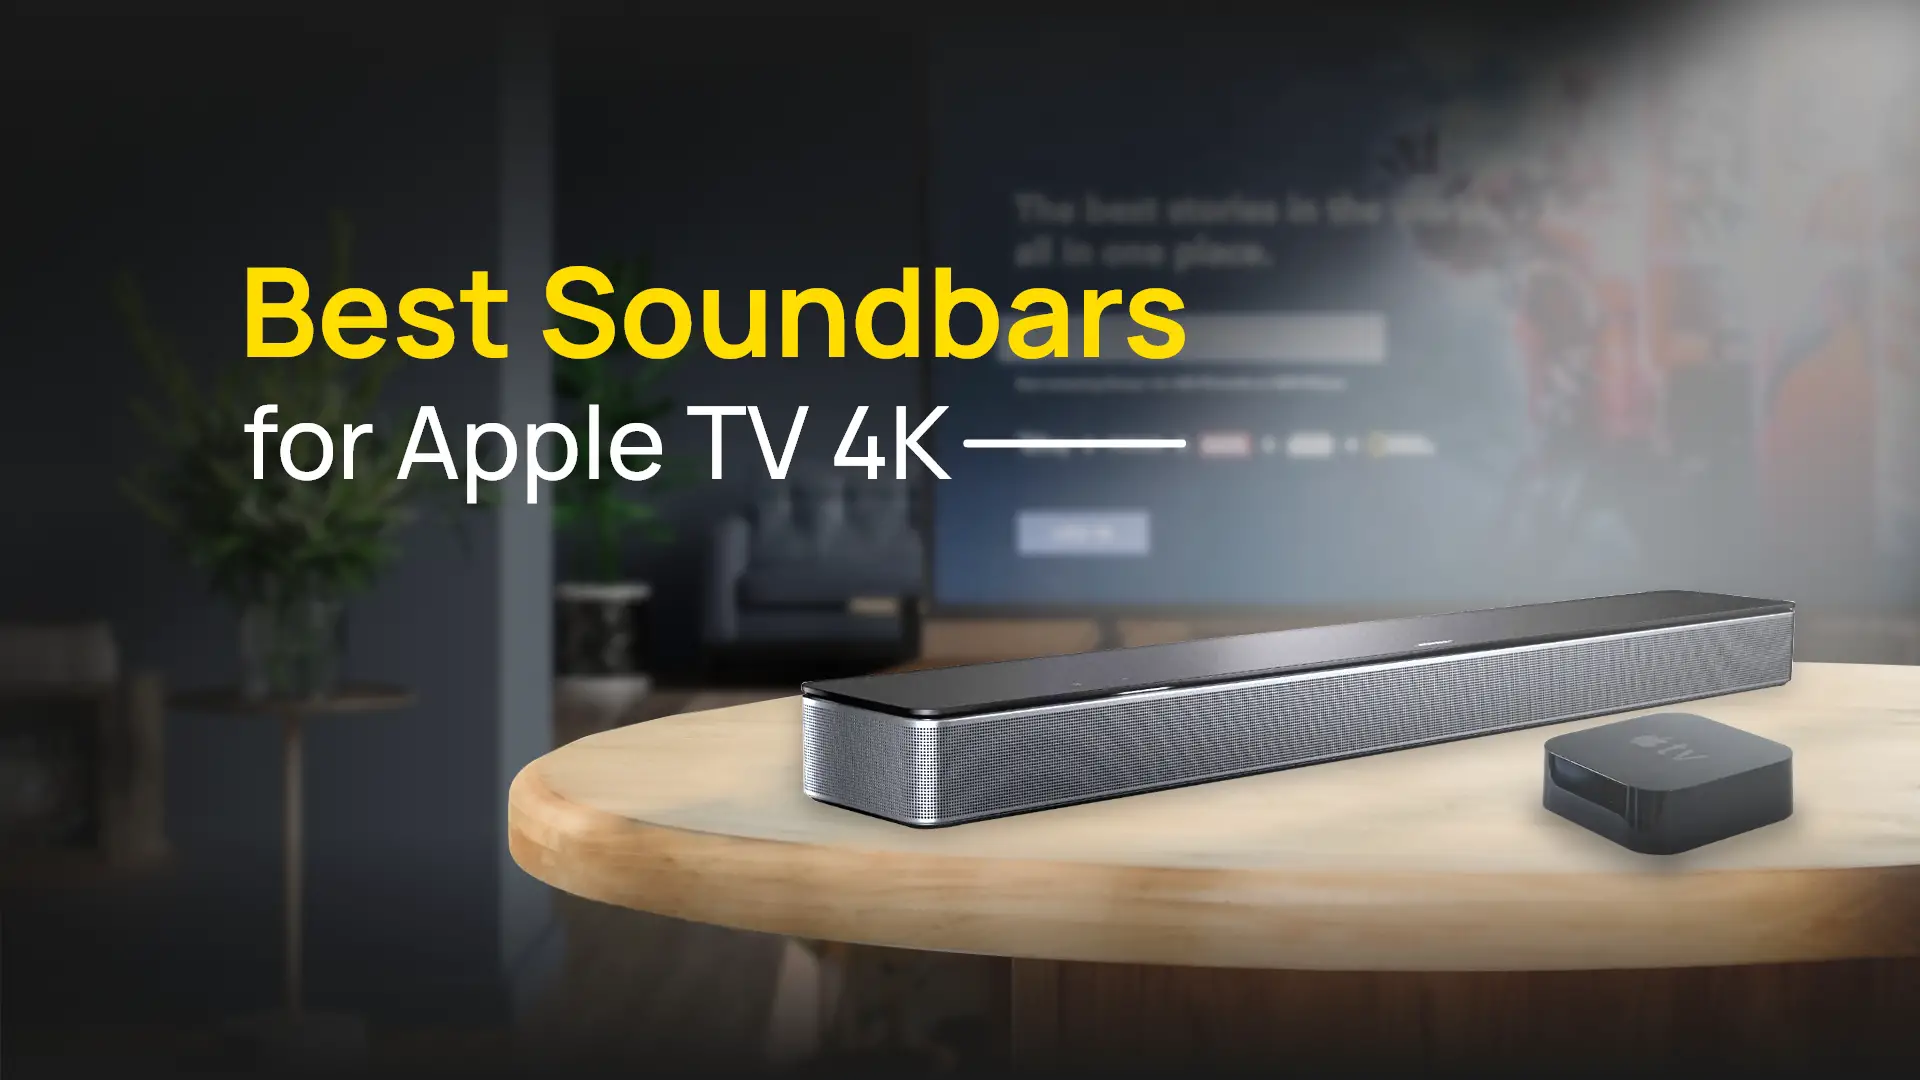 10 Best Soundbars for Apple TV 4k in 2022